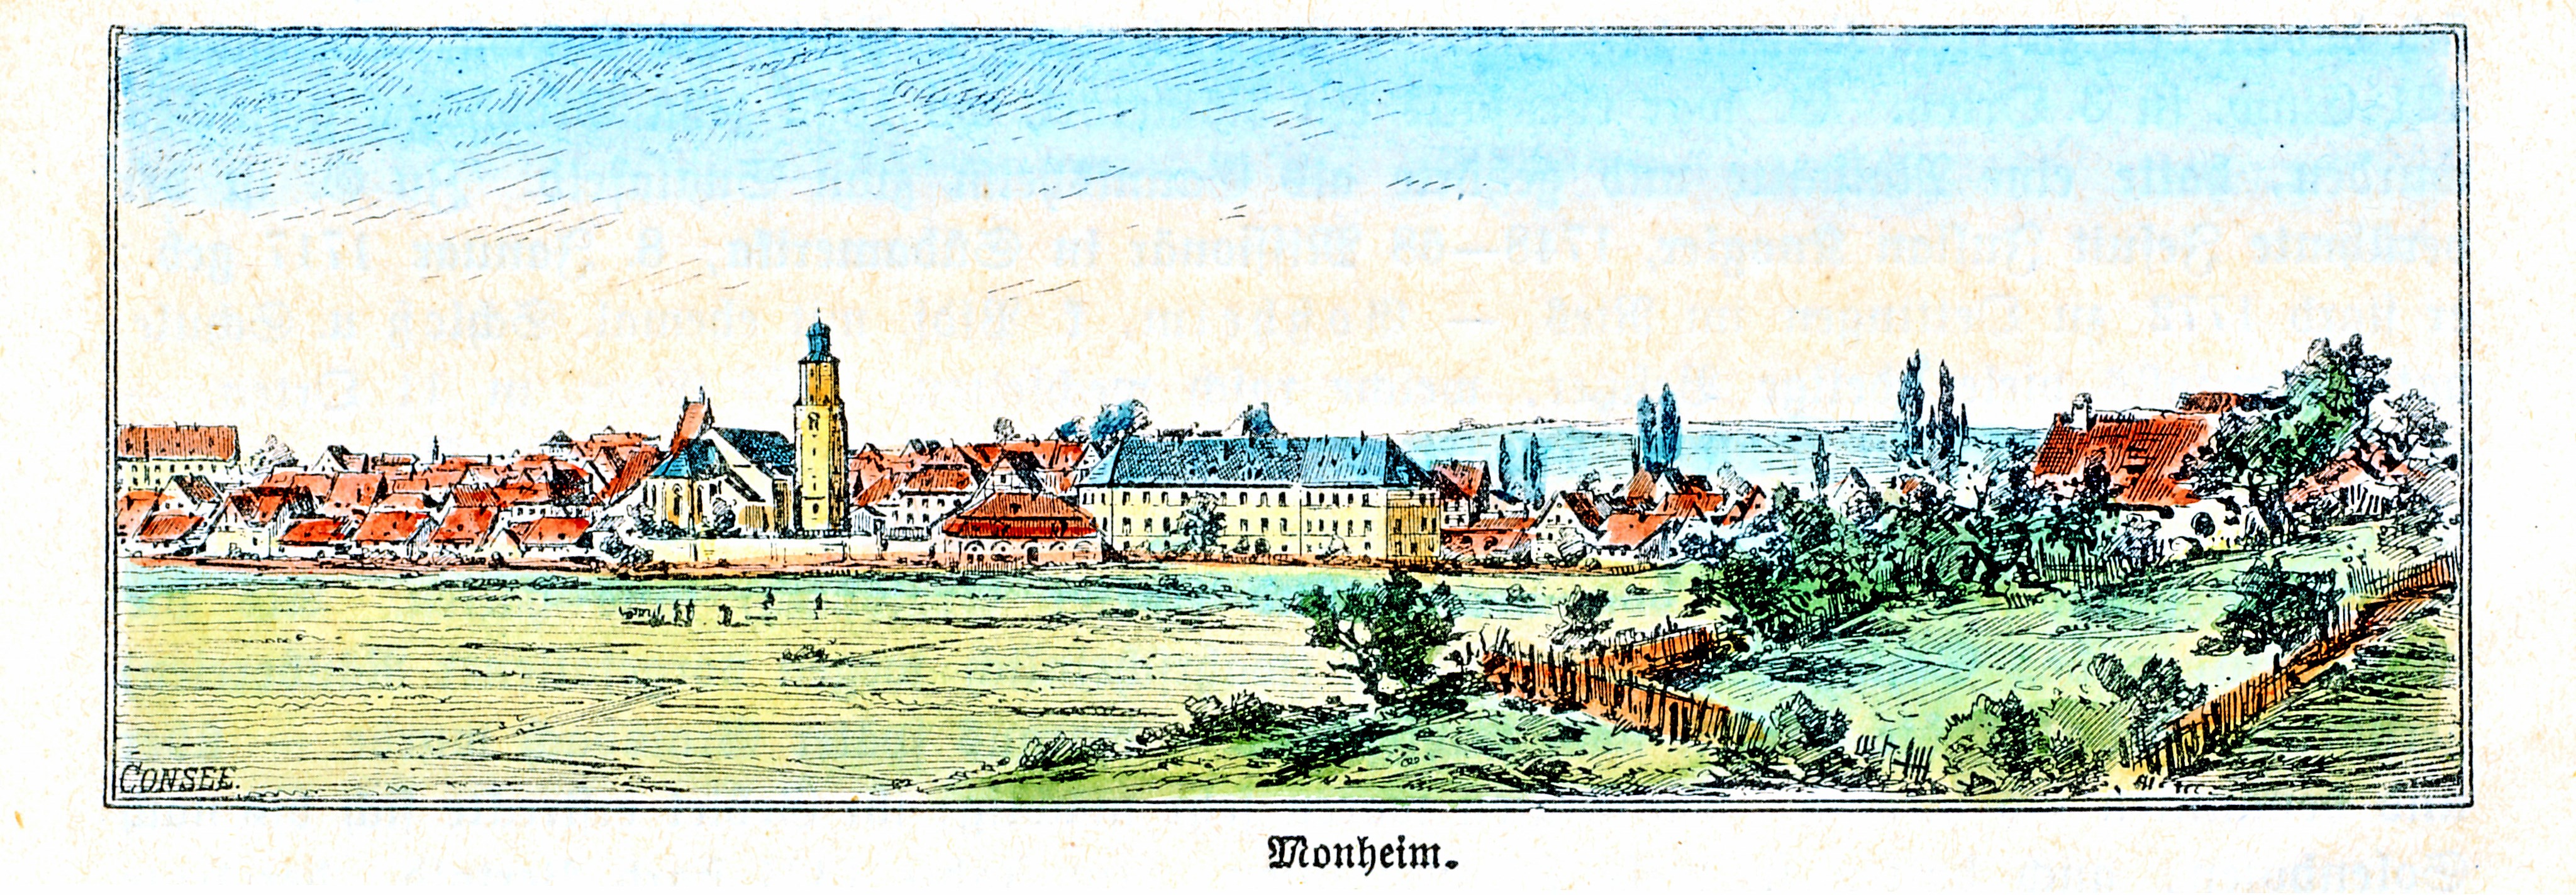 Holzstich 1896 aus der Graphischen Kunstanstalt von Oscar Consee, in: Geographisch-historisches Handbuch von Bayern 2, München 1896